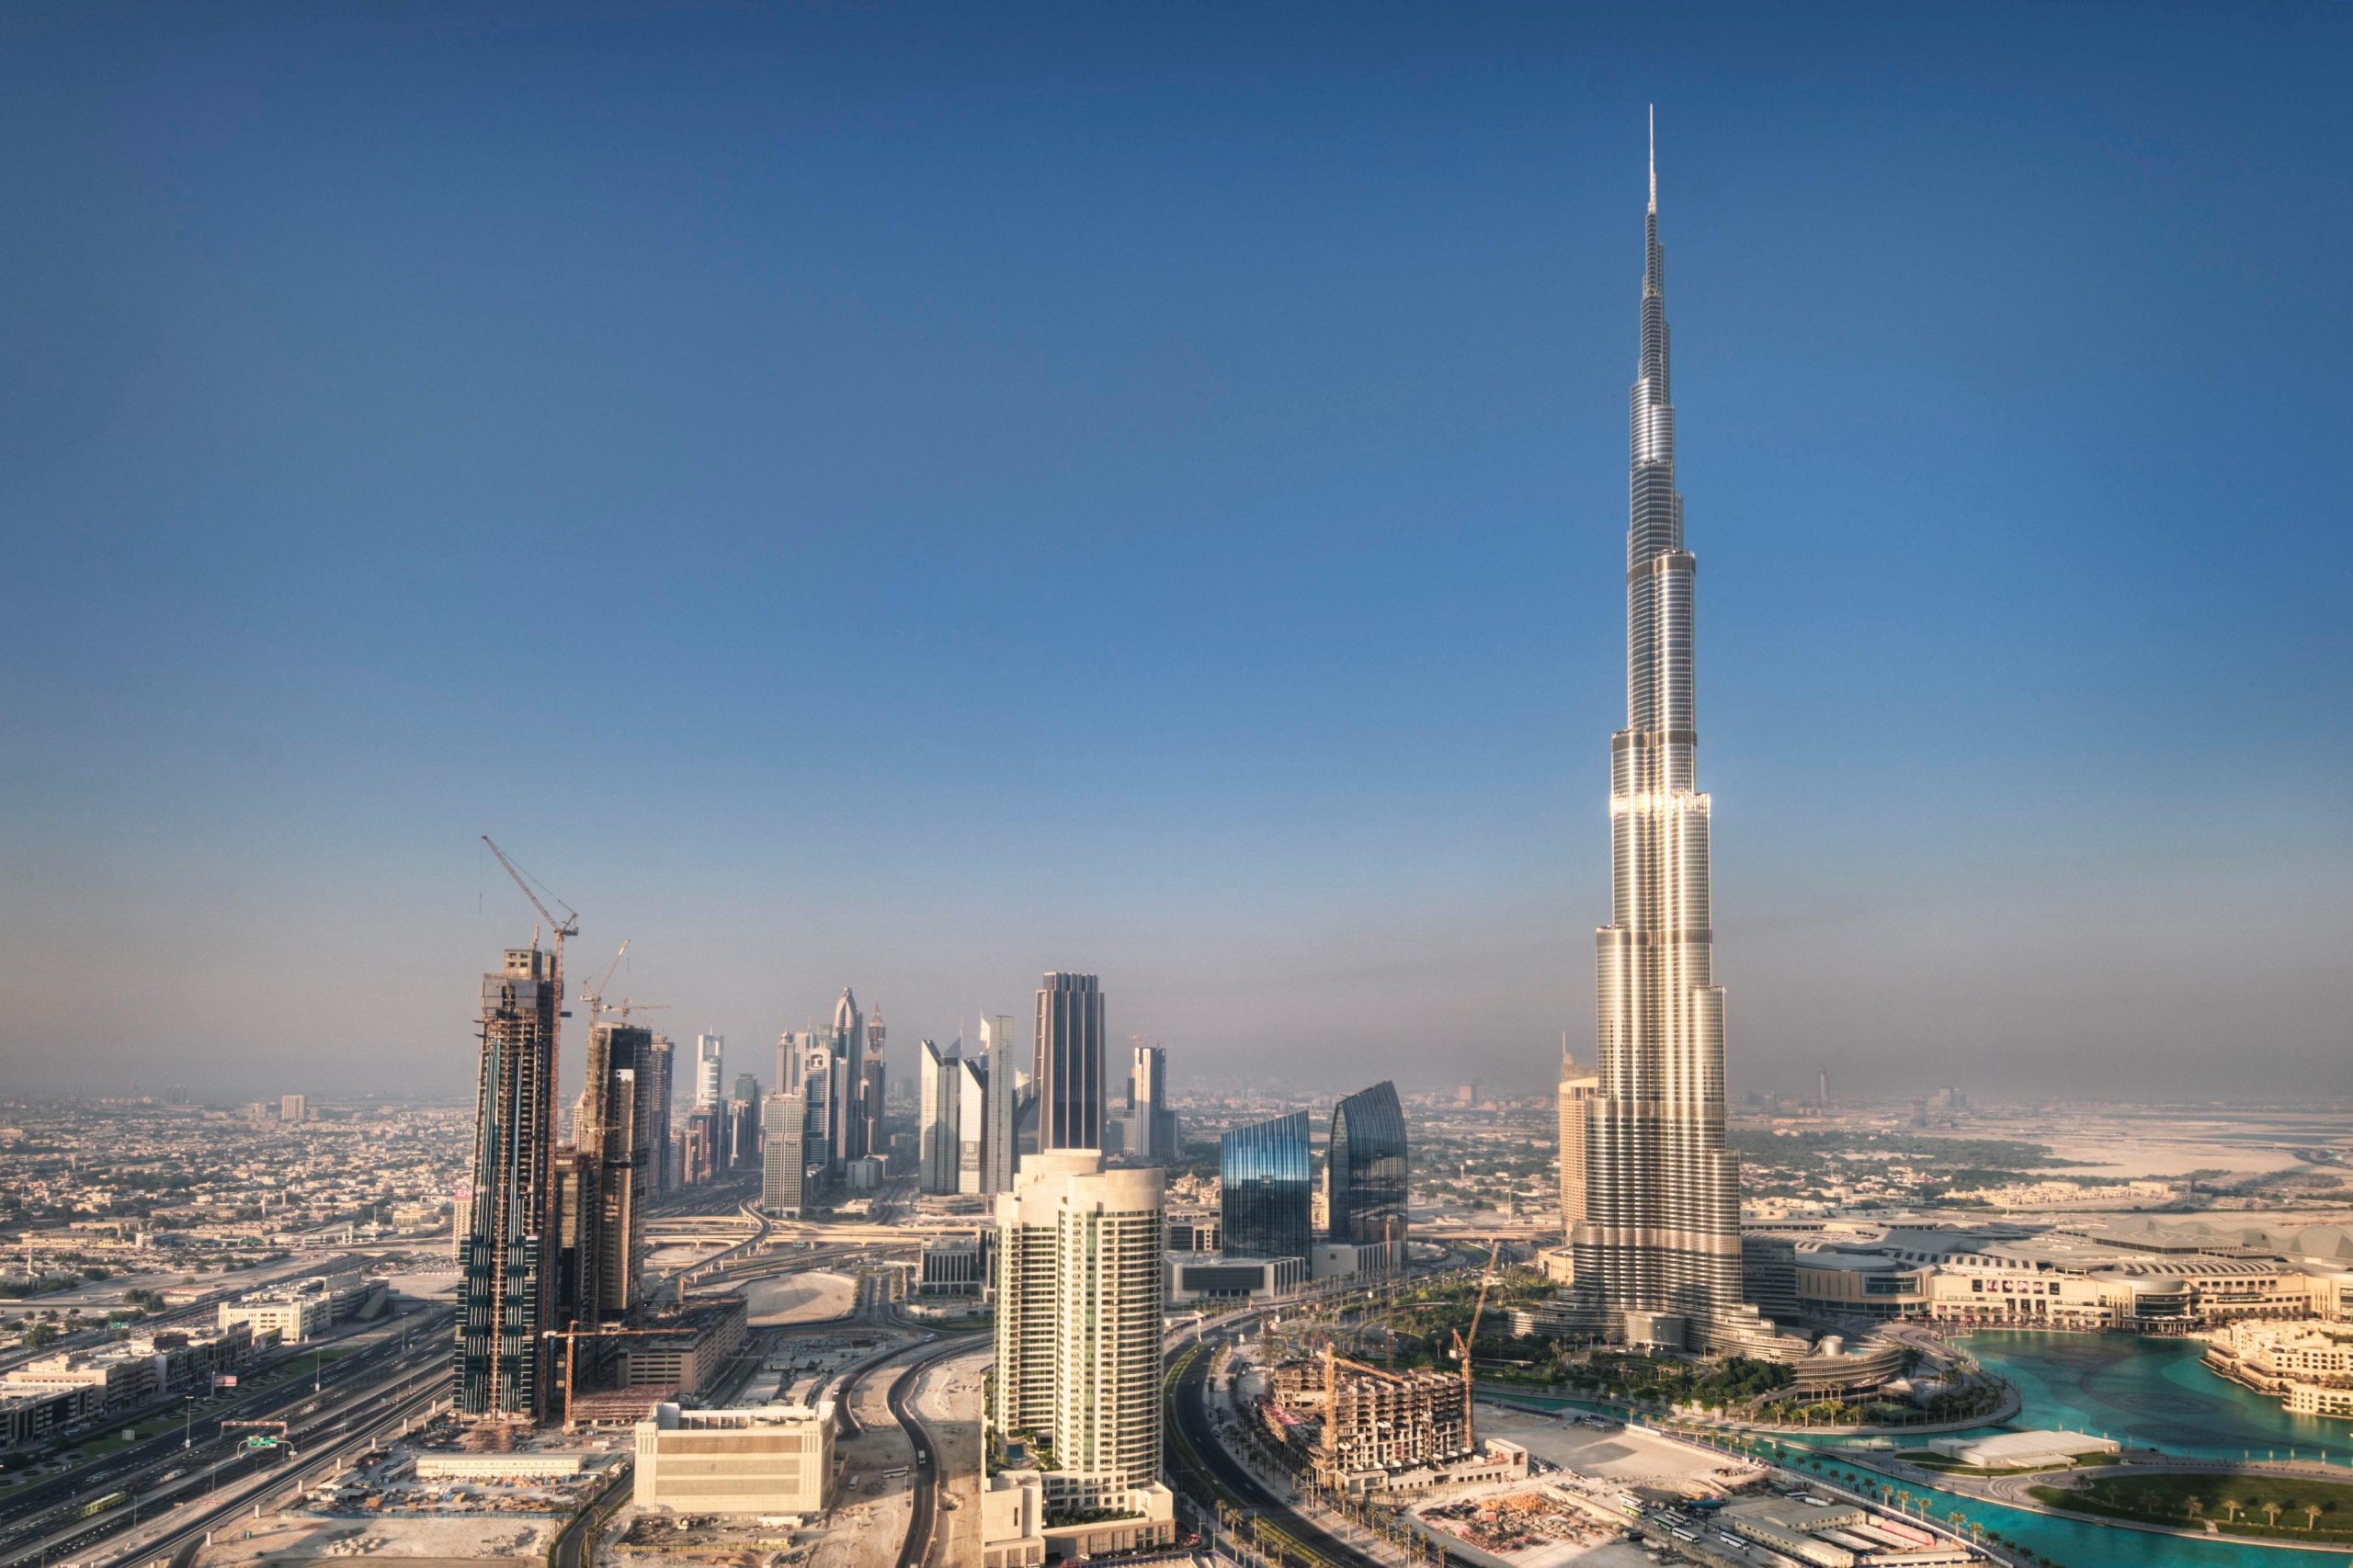 盘点世界上最高的摩天大楼,前十名中国有6位上榜